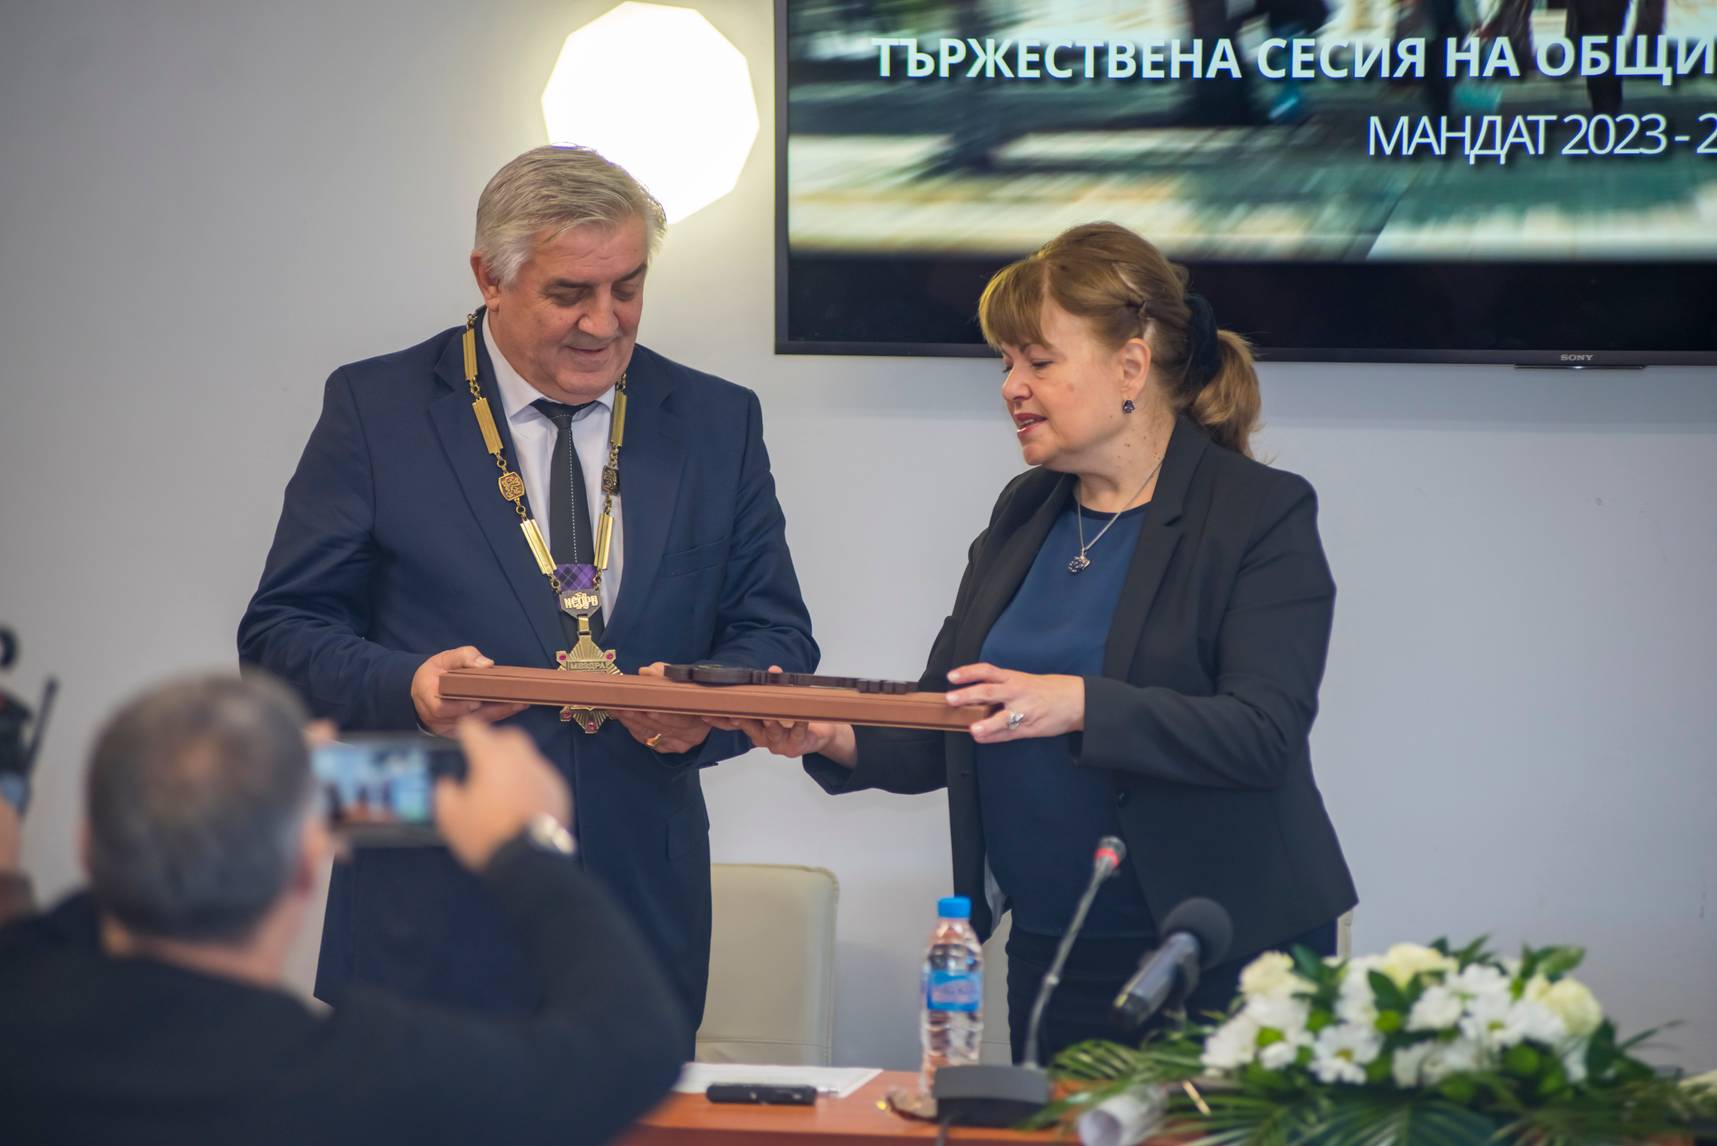 Областният управител на област Враца Надя Донкинска връчва удостоверение на кмета инж. Иван Аспарухов